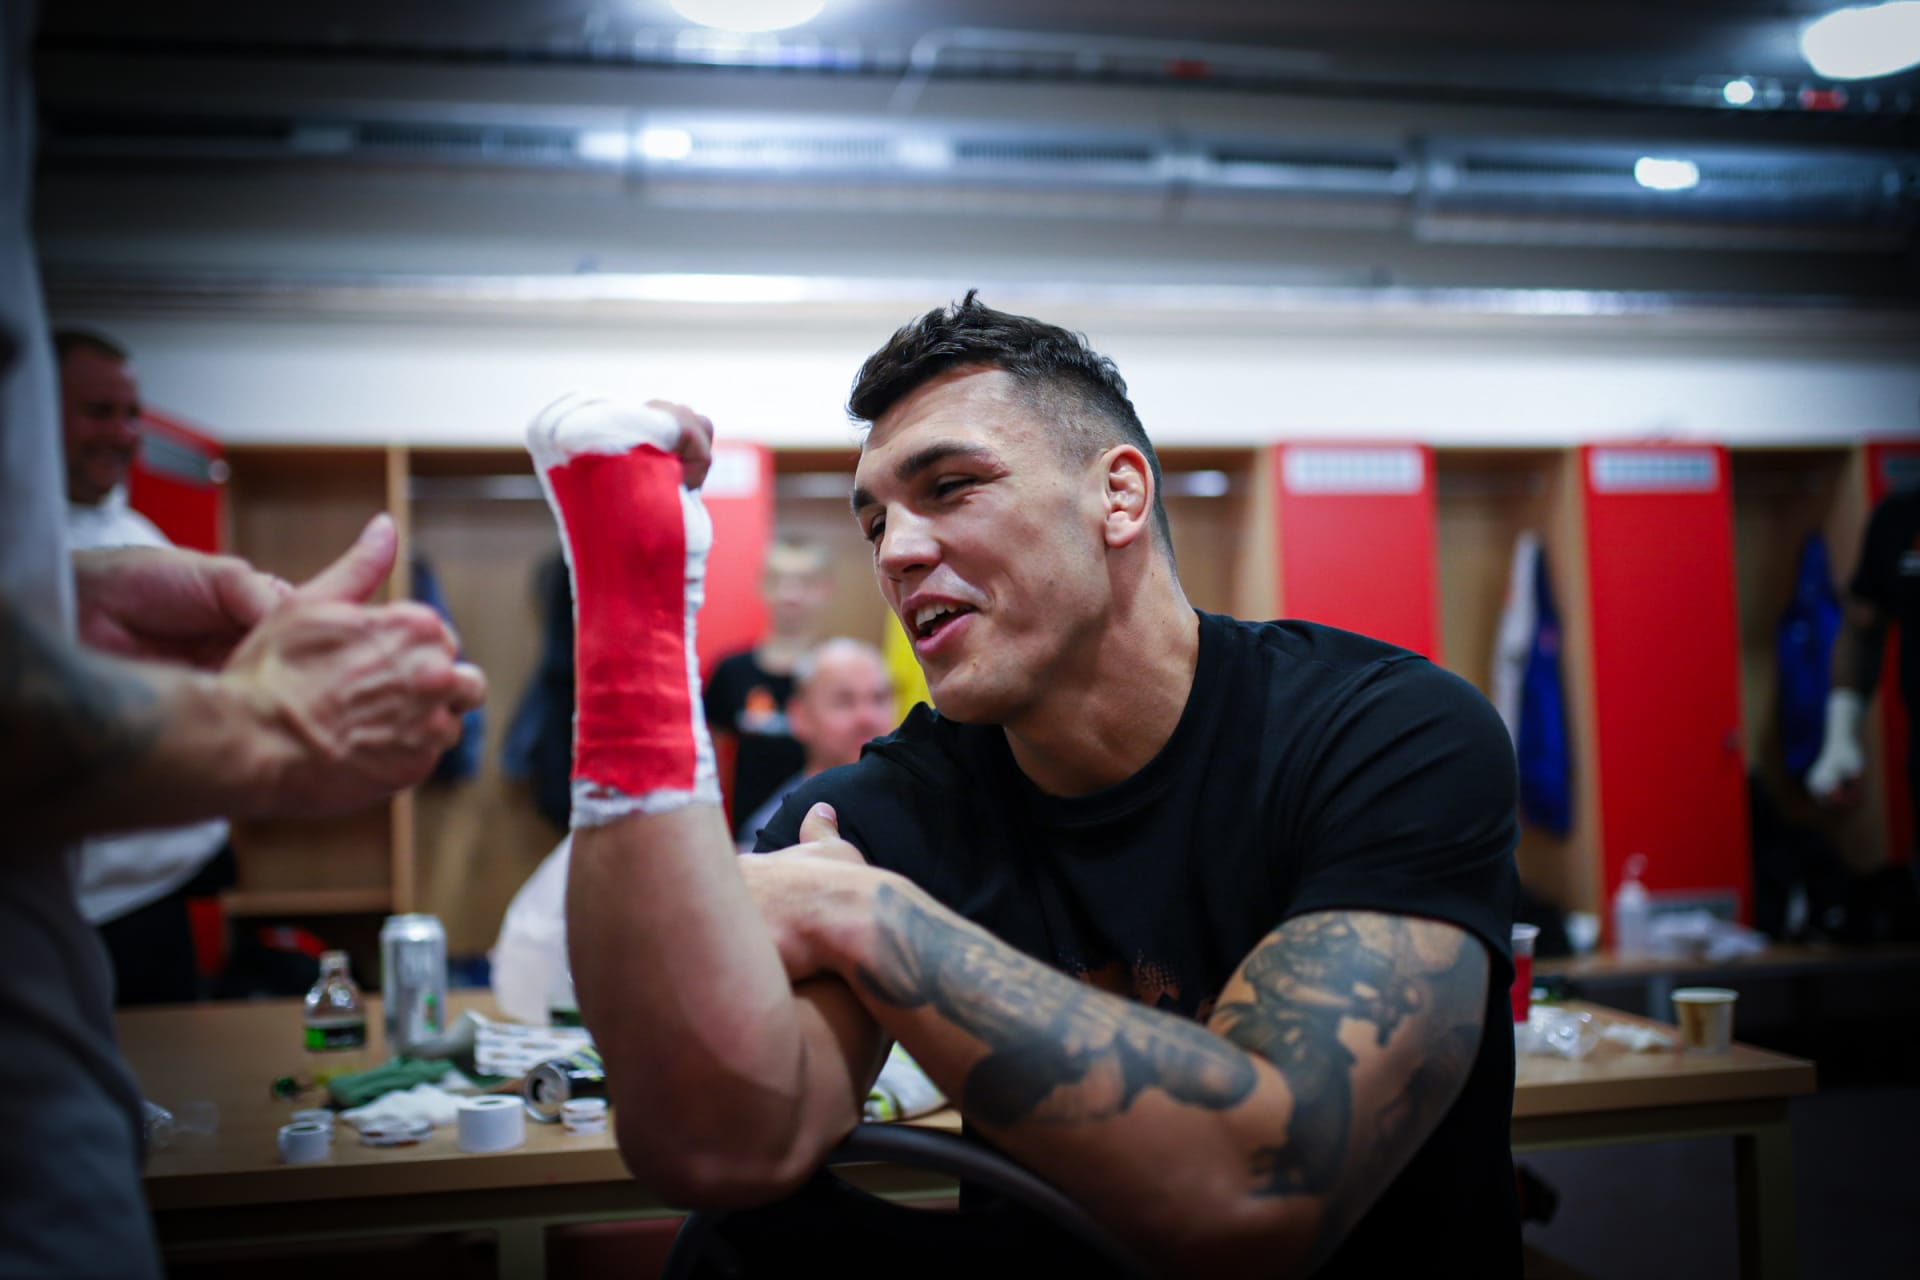 Boxerská bitva Vasil Ducár vs. Viktor Trush na turnaji The Ring